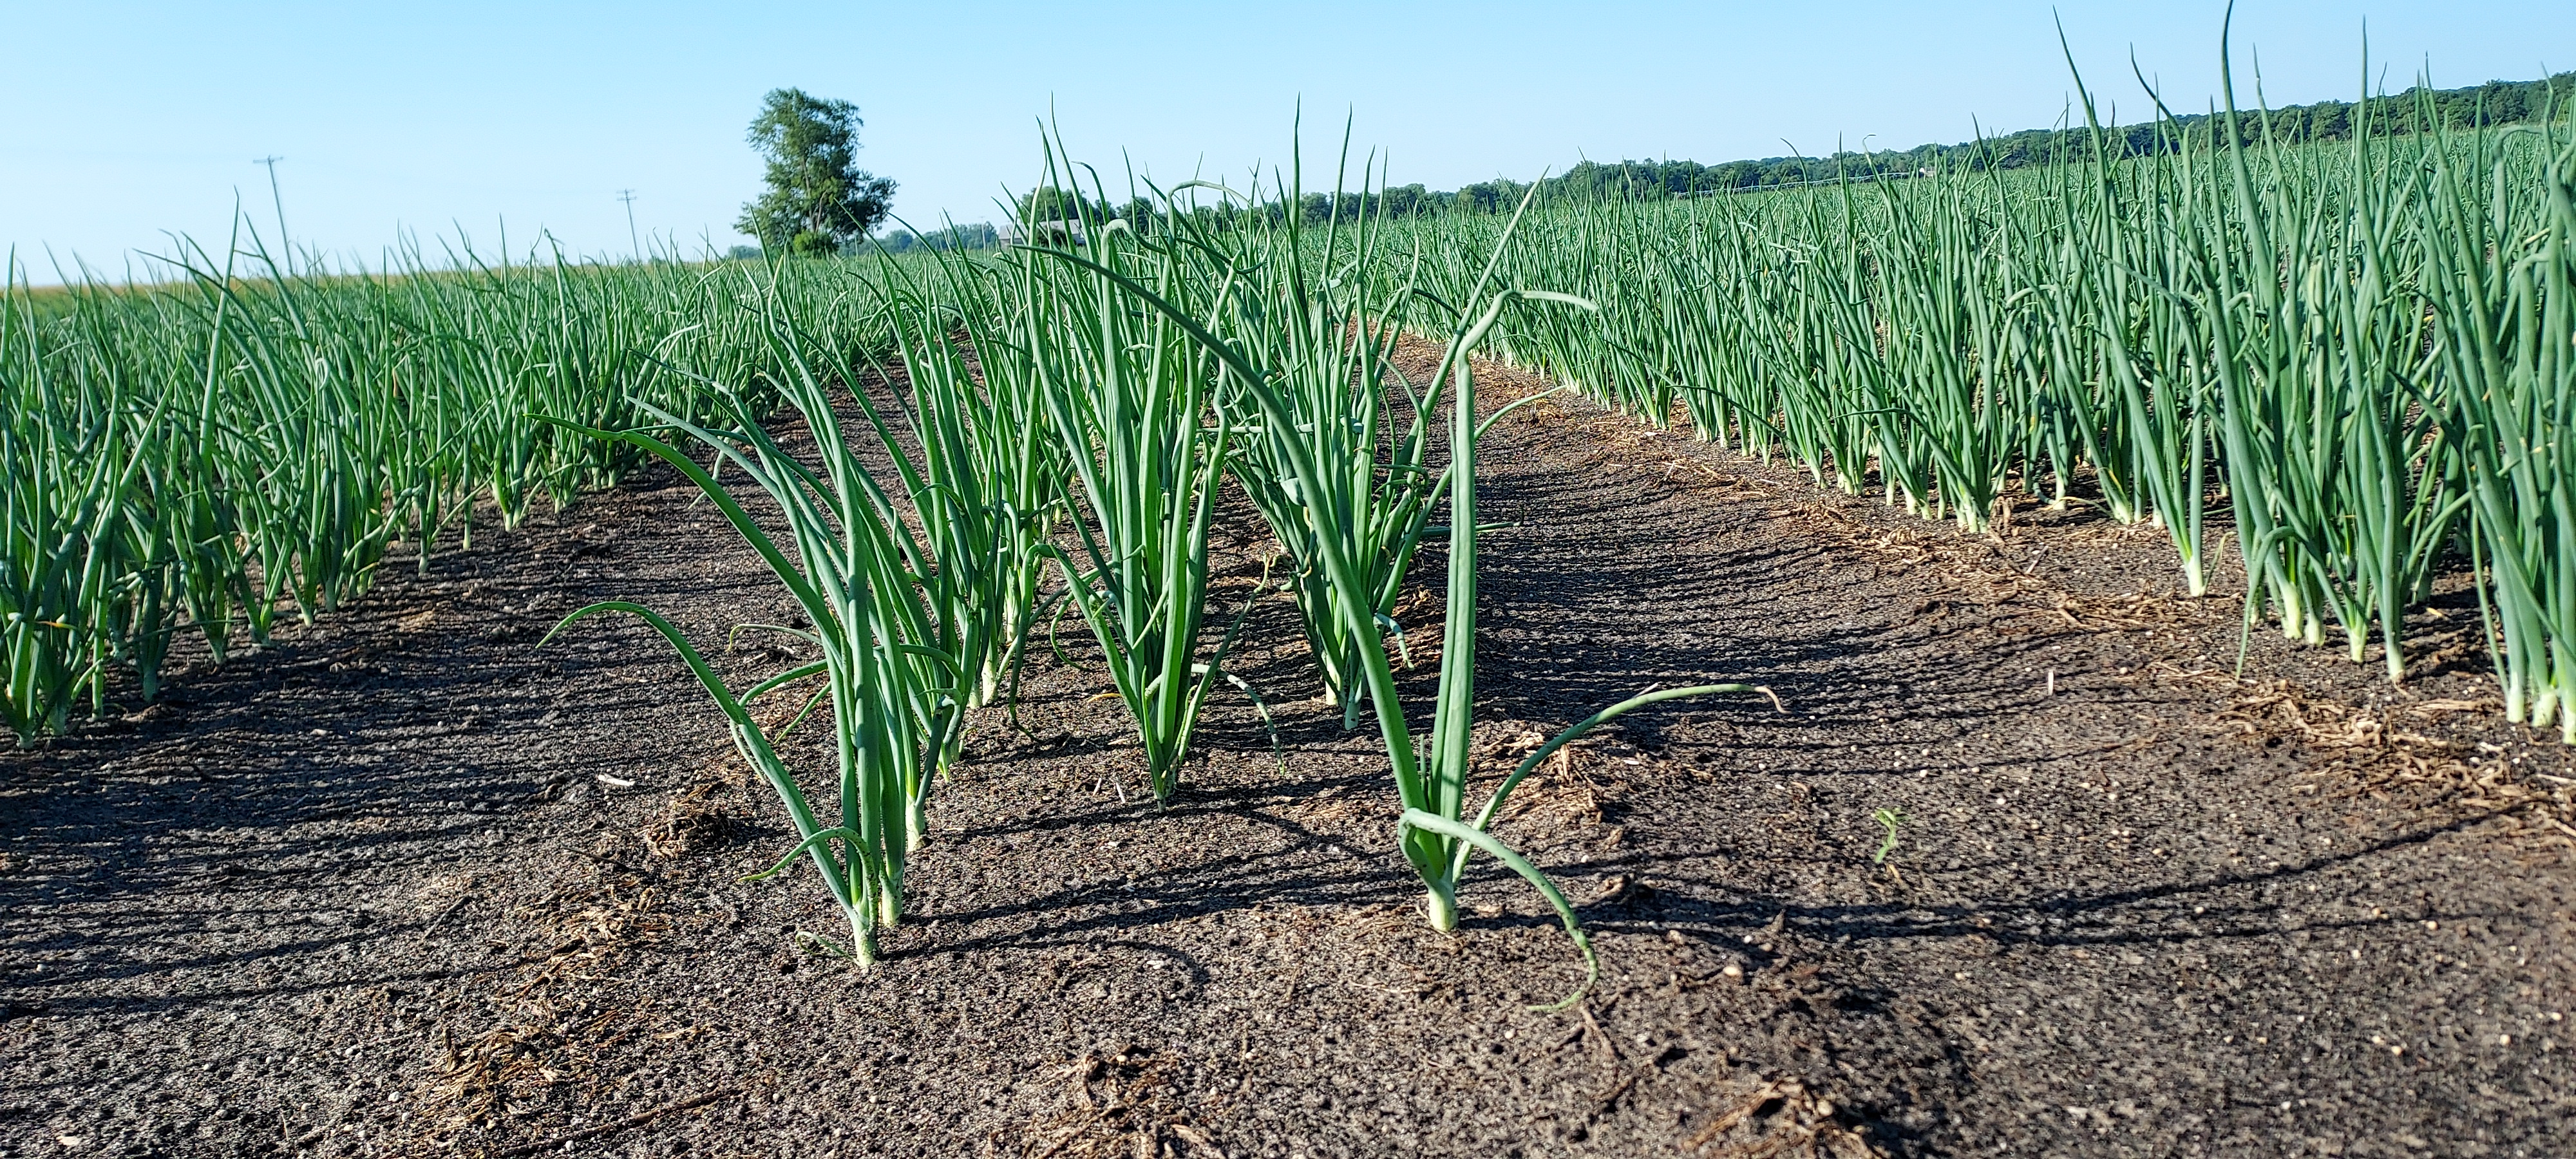 Onions in a field.